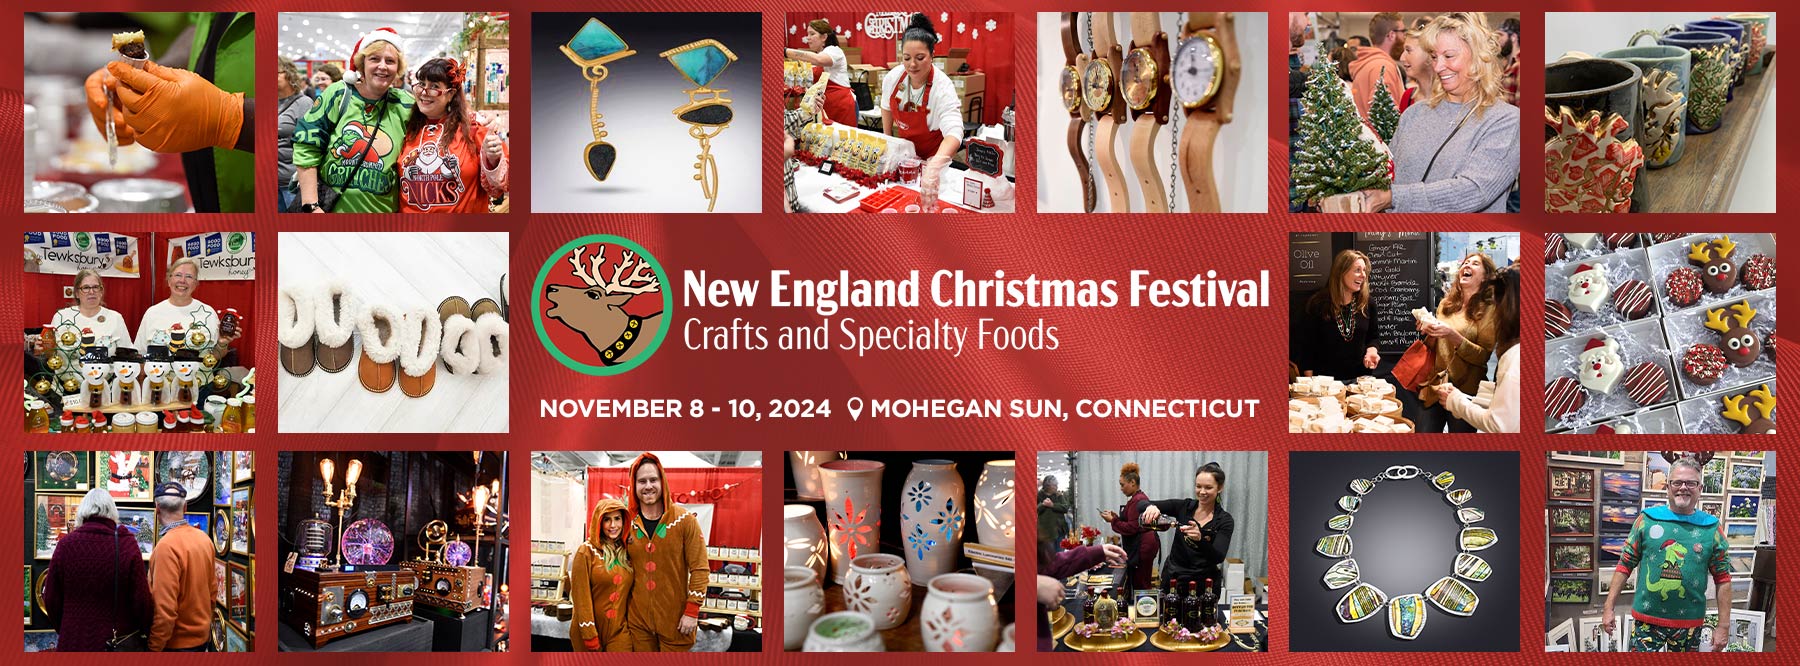 New England Christmas Festival